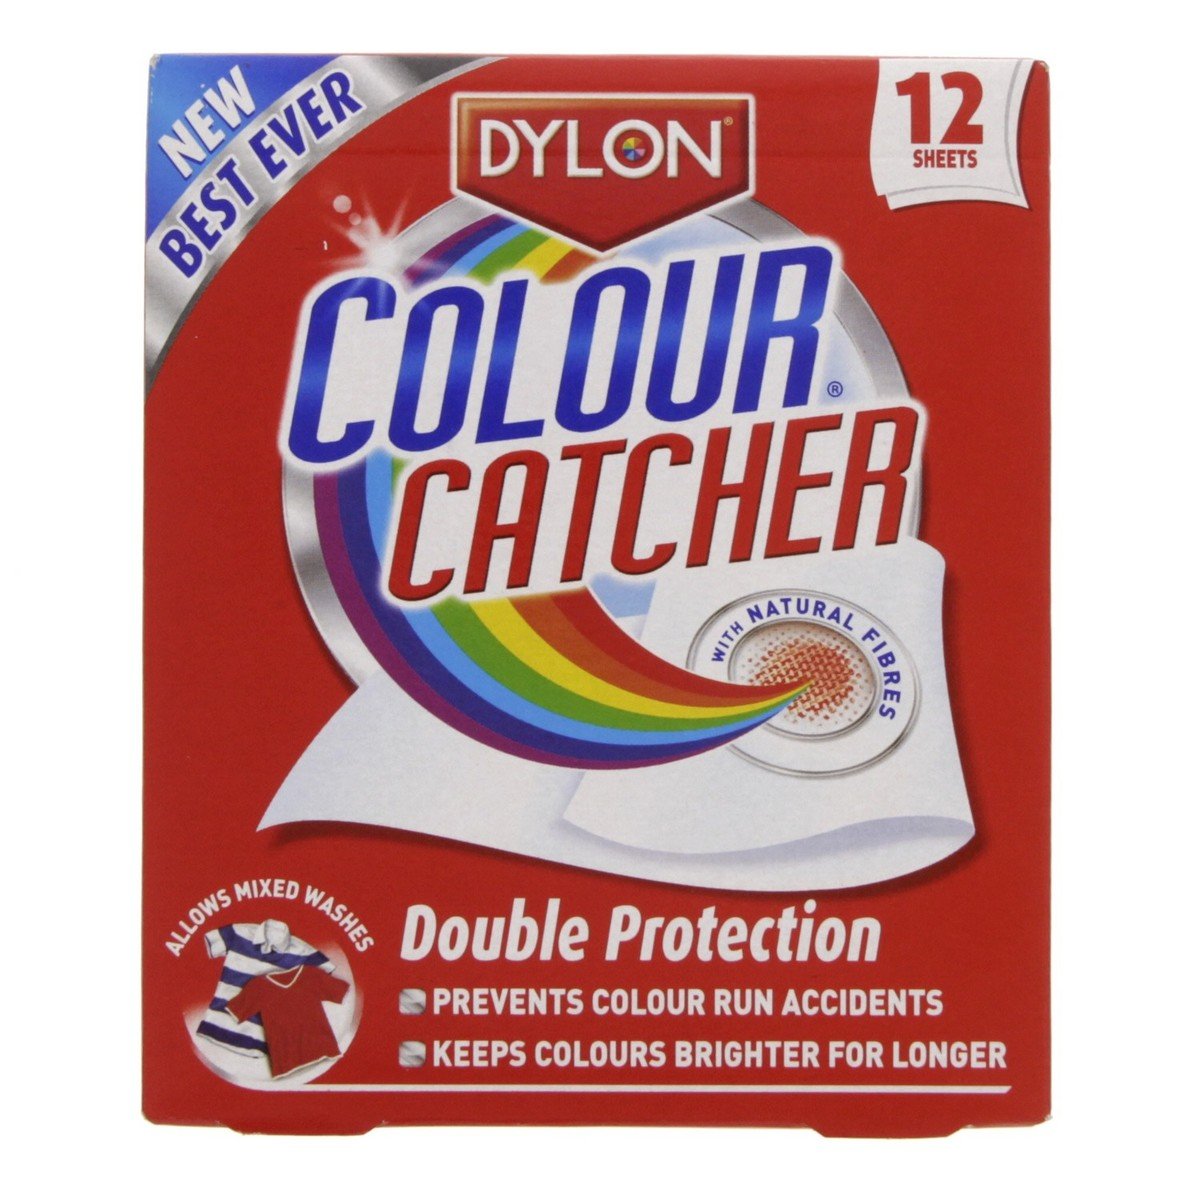 Dylon Colour Catcher 12 Sheets